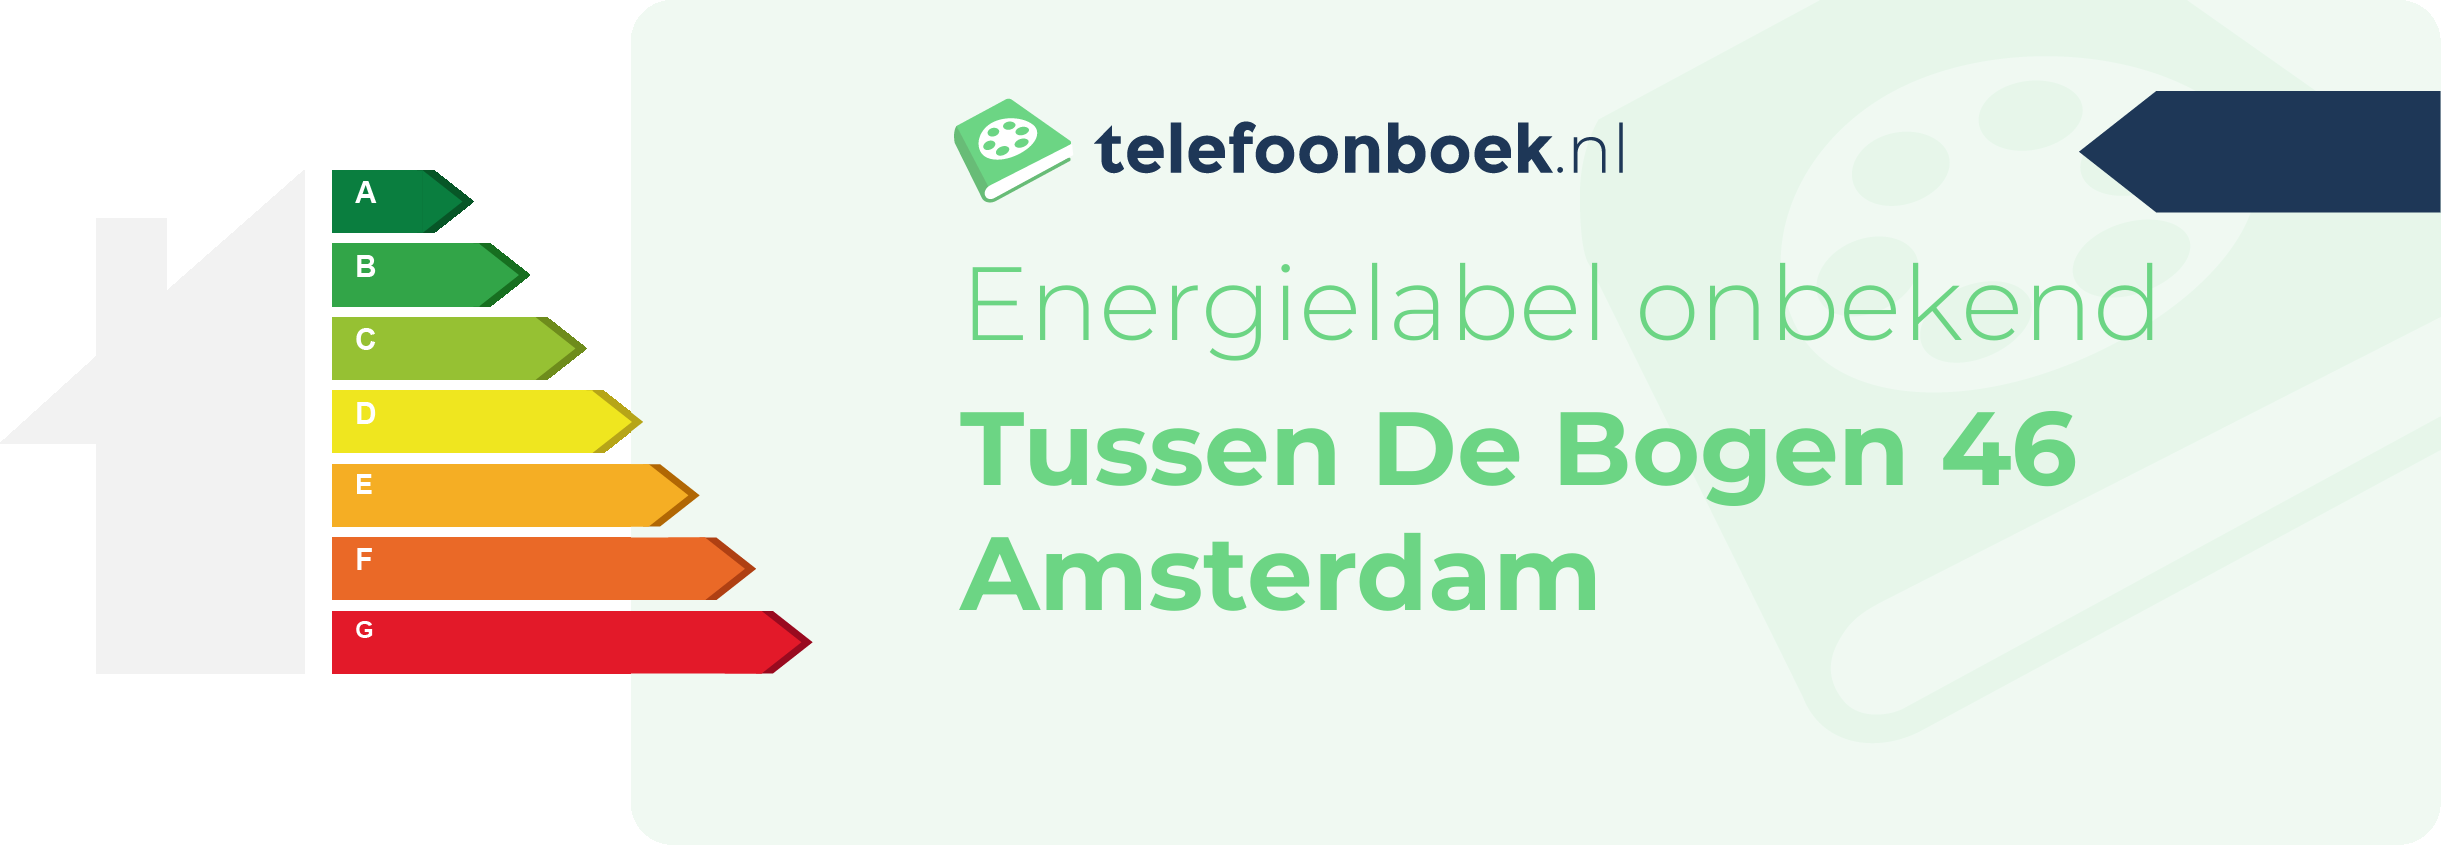 Energielabel Tussen De Bogen 46 Amsterdam